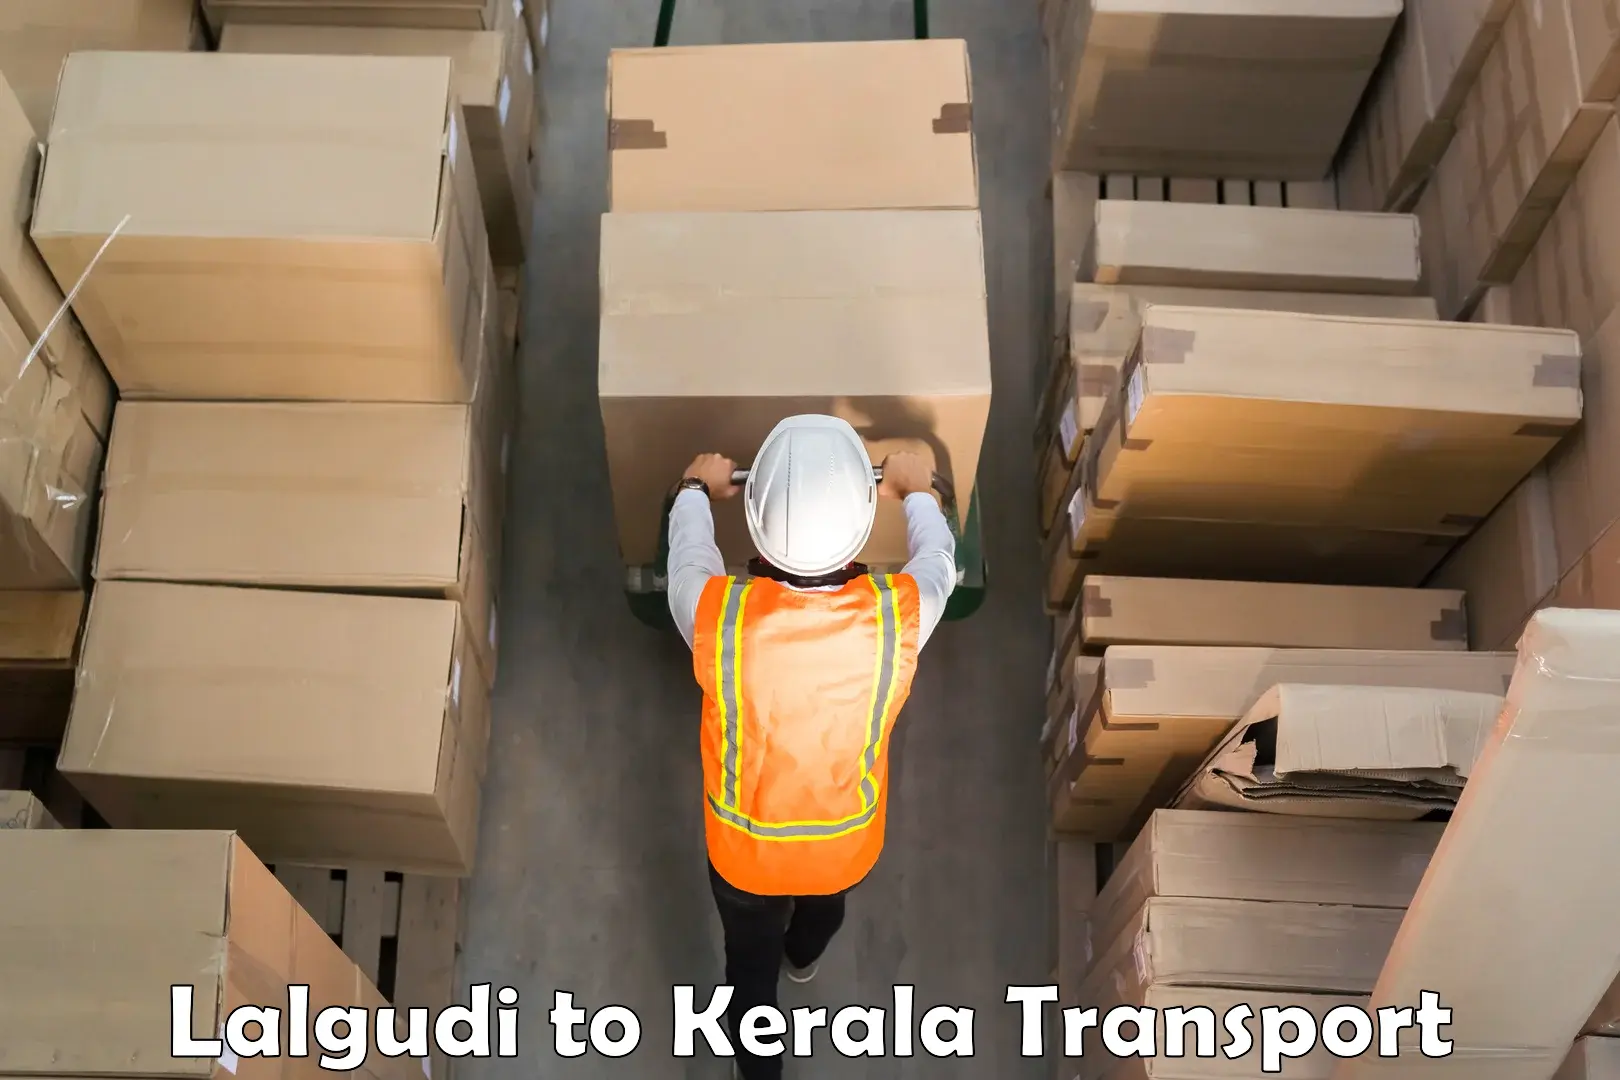 Shipping partner Lalgudi to Kannapuram